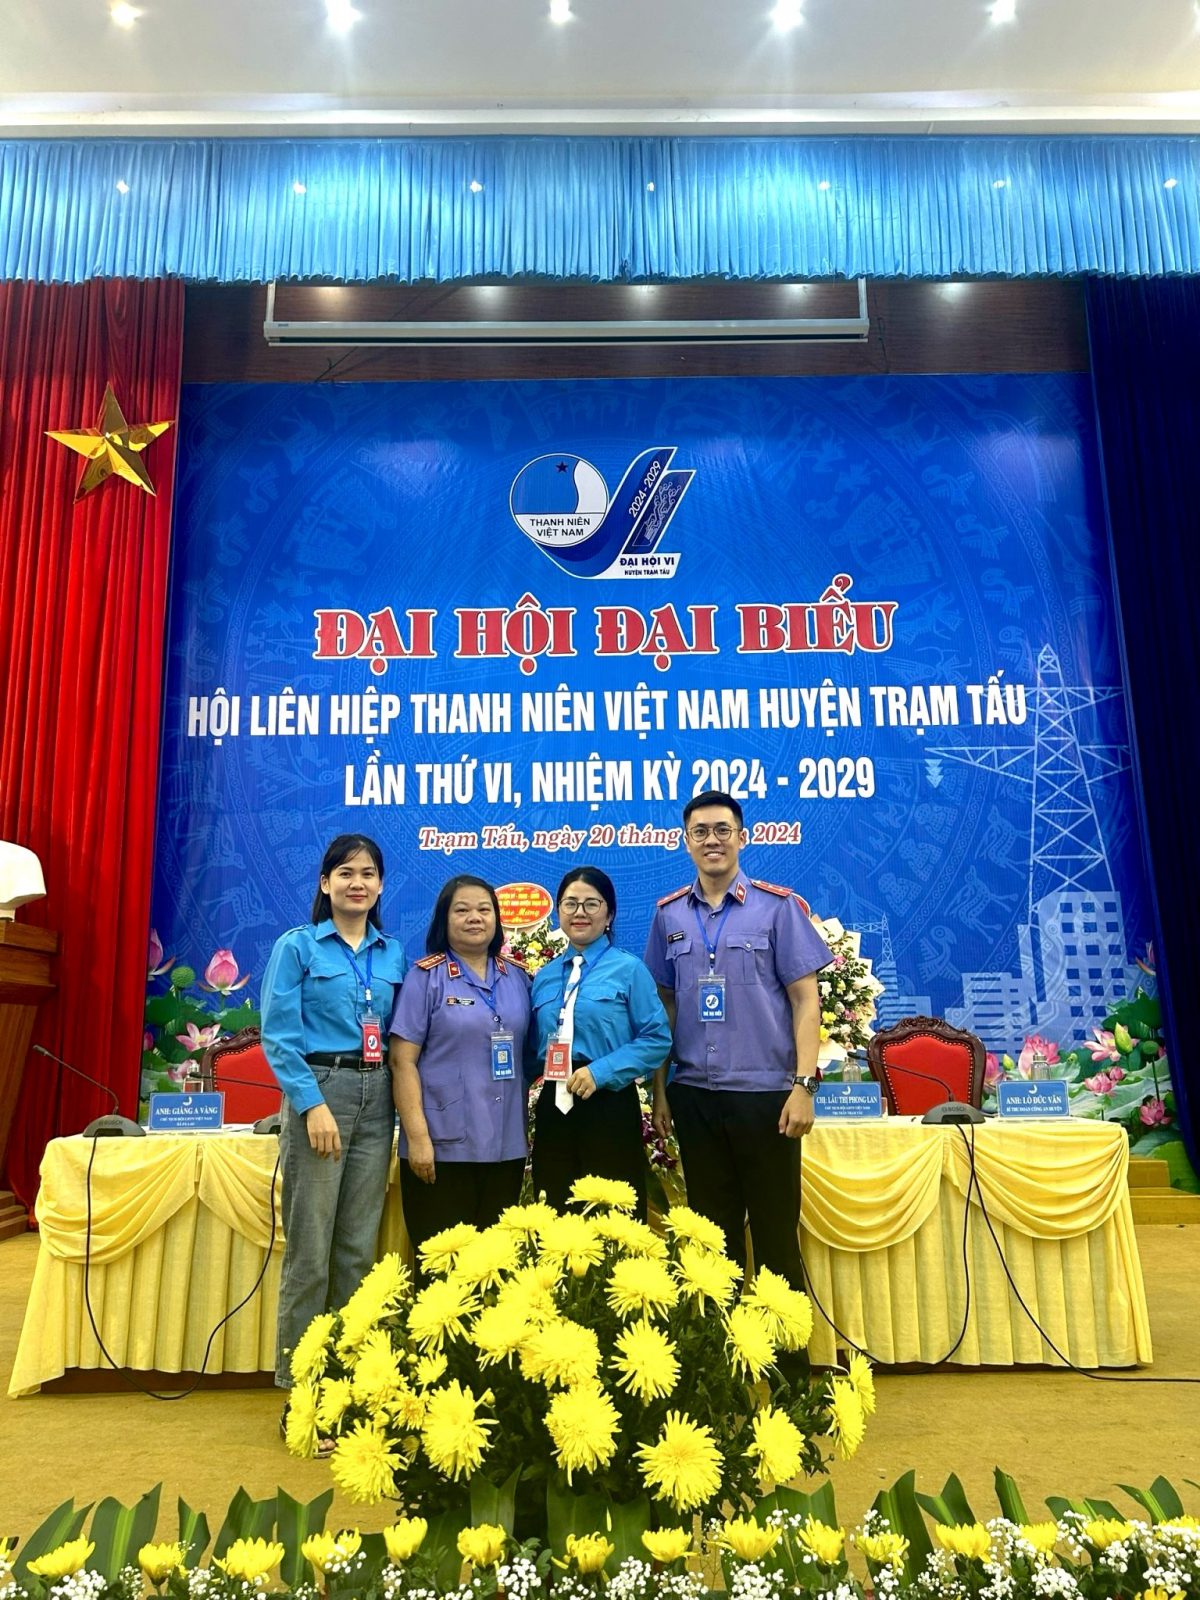 Đoàn viên thanh niên VKSND huyện Trạm Tấu tích cực hưởng ứng, tham gia các hoạt động chào mừng Đại hội Đại biểu Hội liên hiệp thanh niên Việt Nam huyện Trạm Tấu lần thứ VI, nhiệm kỳ 2024-2029